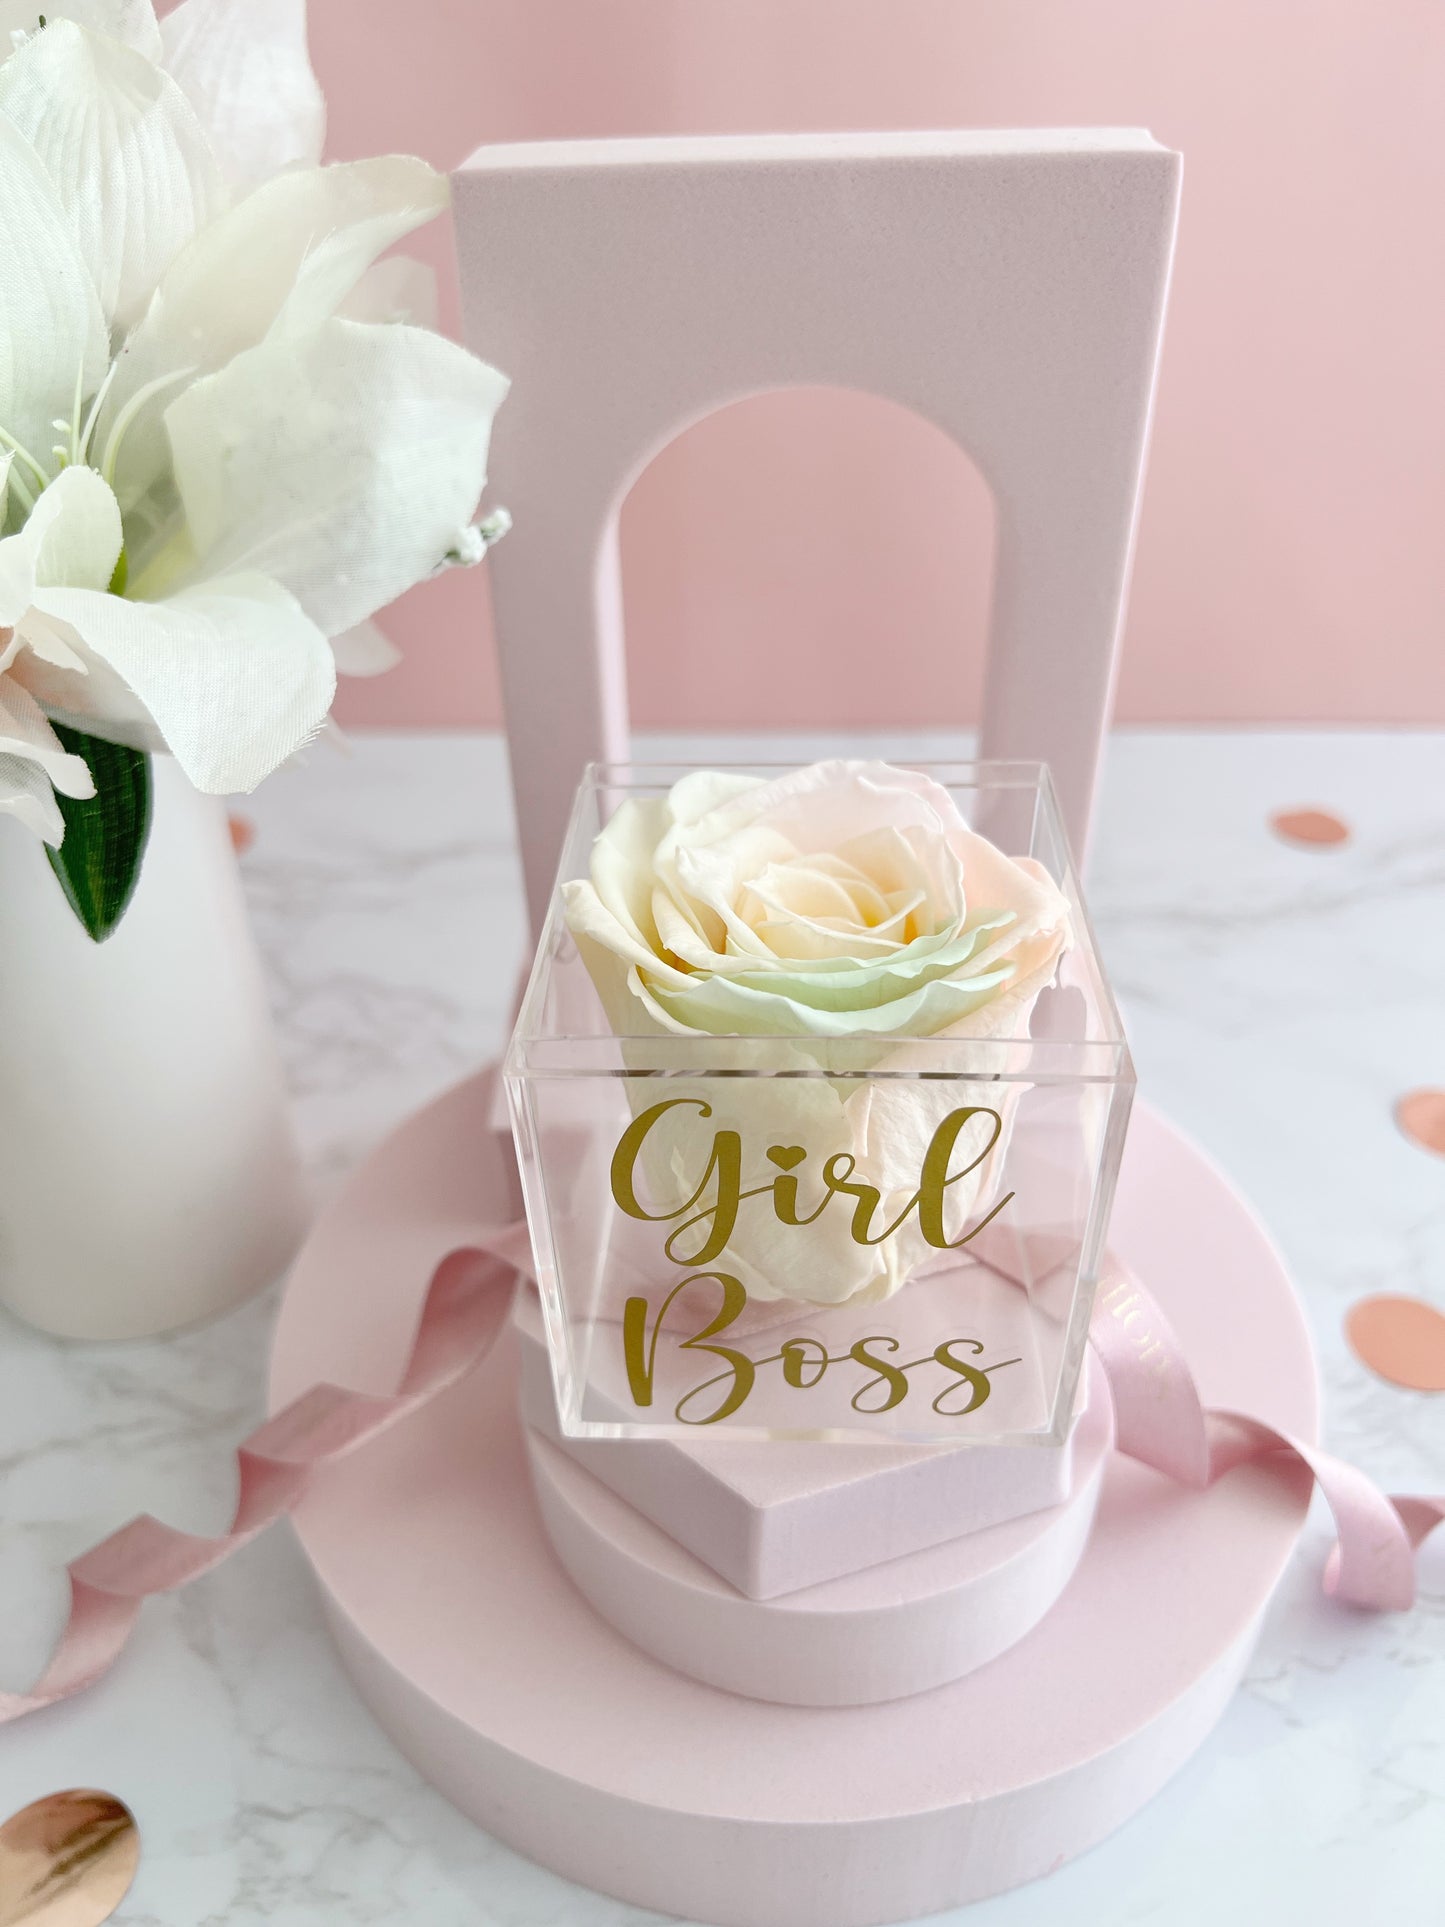 Girl Boss- Preserved Rose